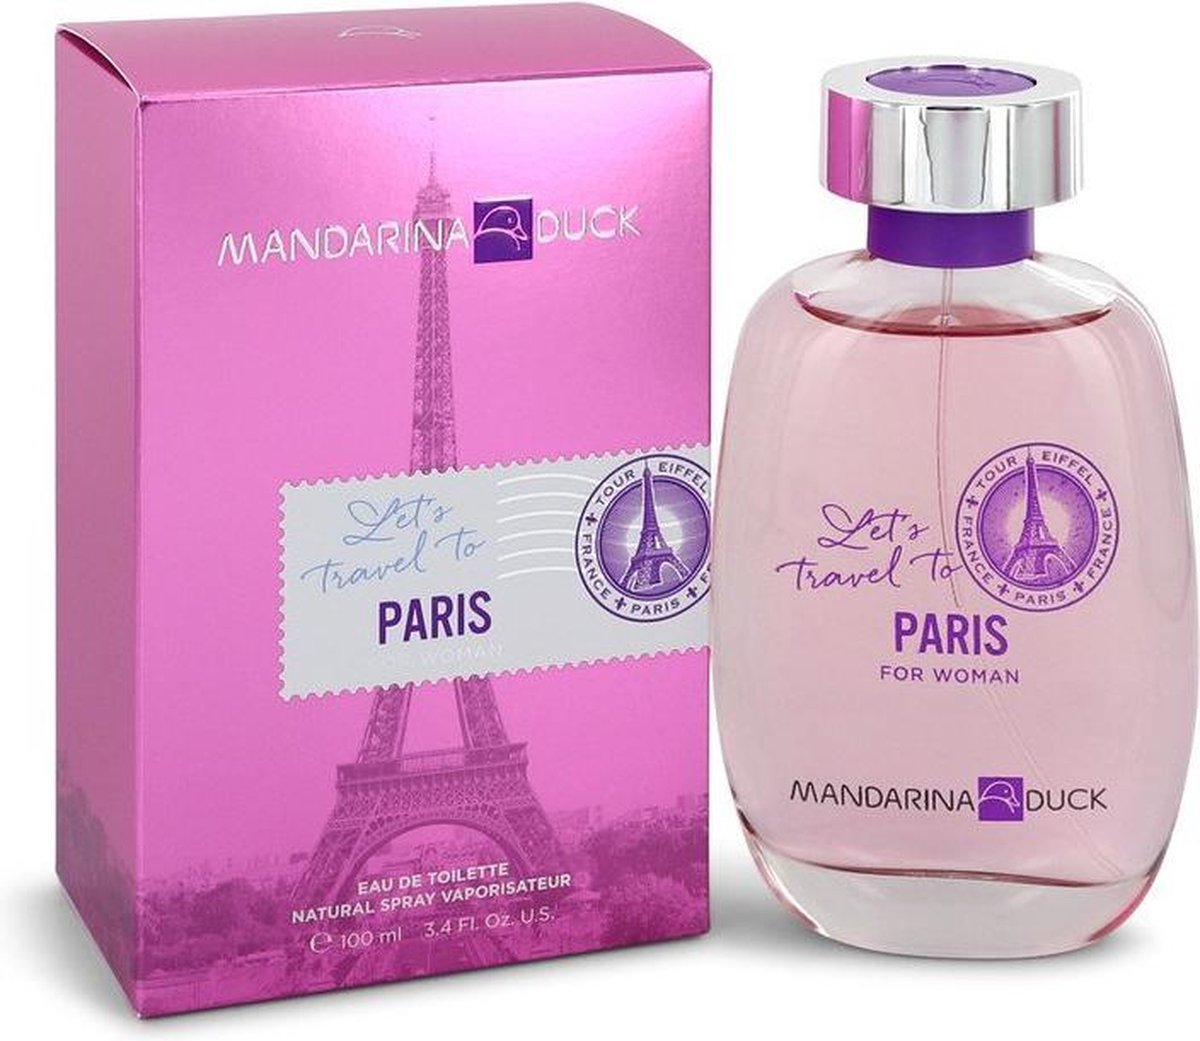 Mandarina Duck Let's Travel To Paris - Eau de toilette spray - 100 ml